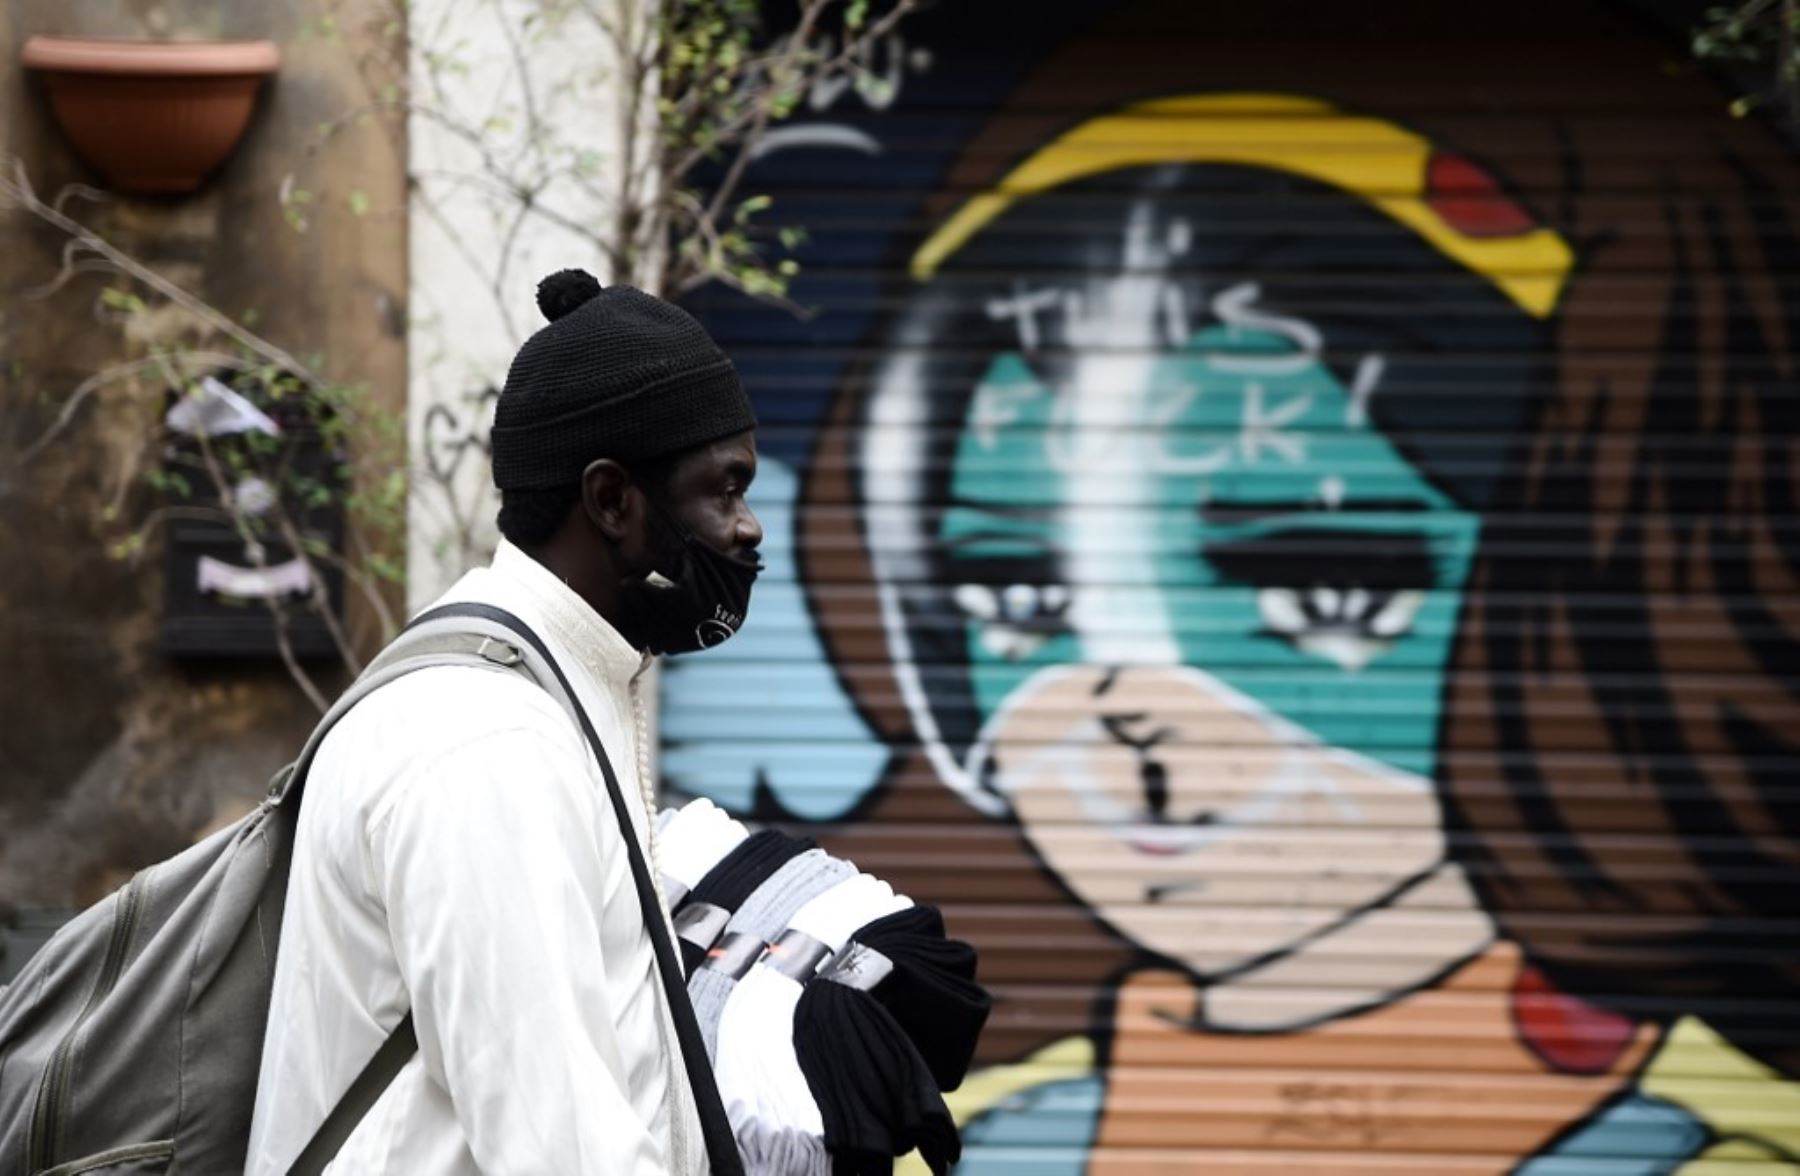 Un vendedor ambulante, con una mascarilla, camina frente a un mural en el centro de Roma. Foto: AFP